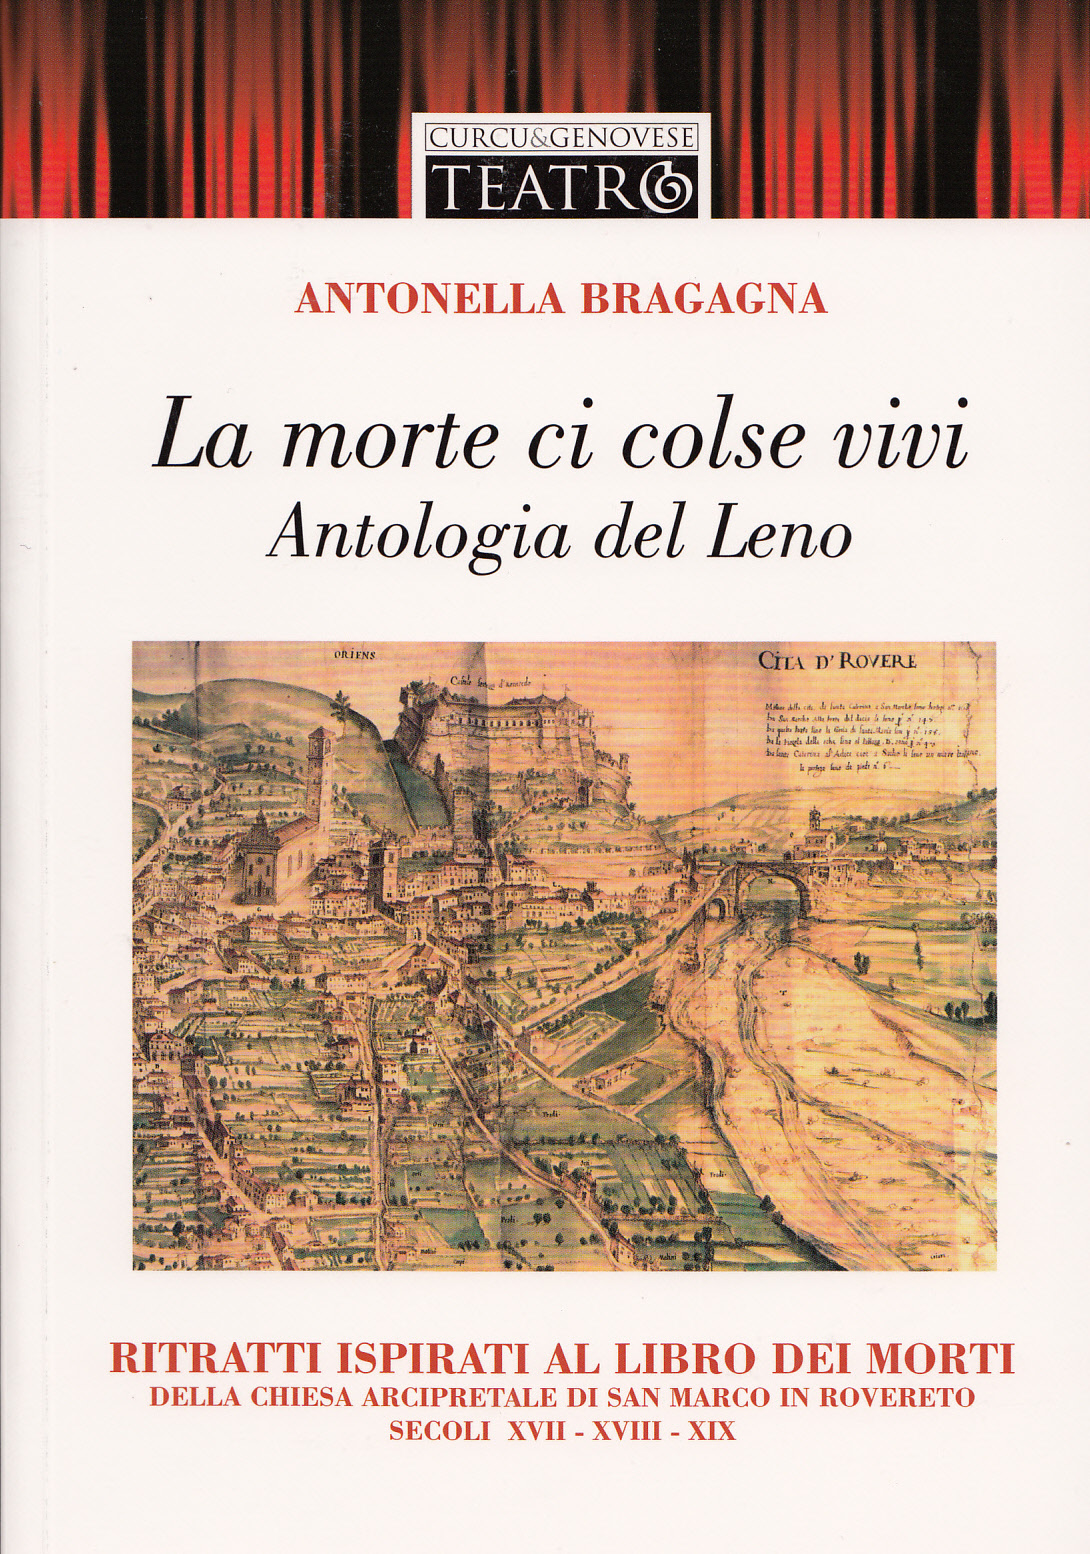 Antonella Bragagna, La morte ci colse vivi, Antologia del Leno, 2011